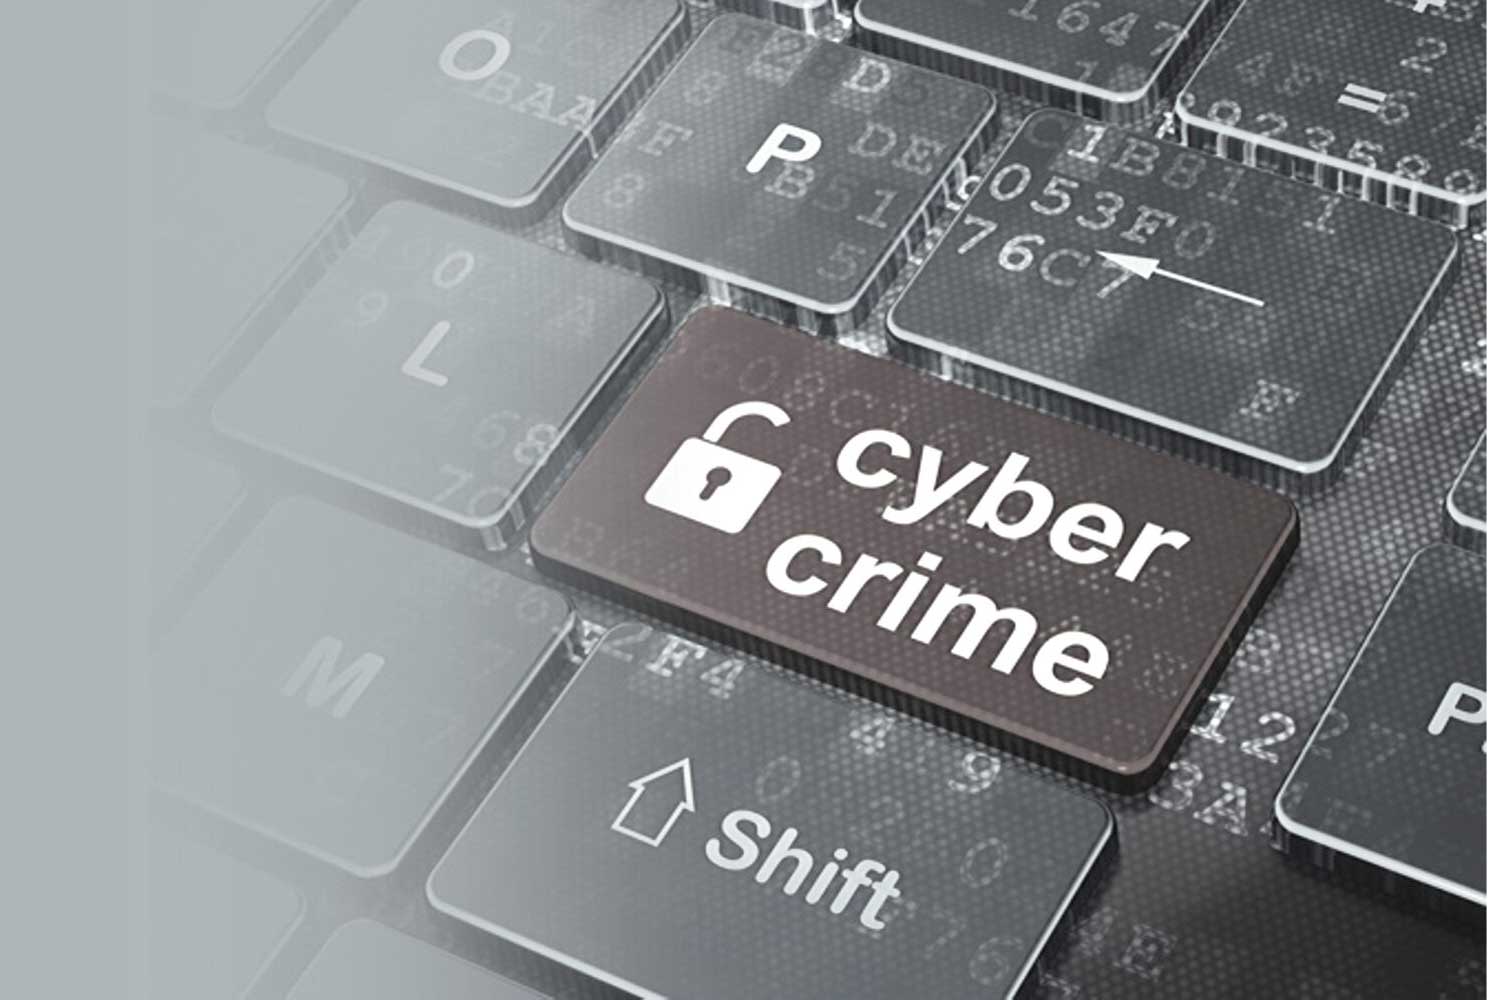 Cybercriminalité: la Namibie est le pays le plus ciblé d'Afrique